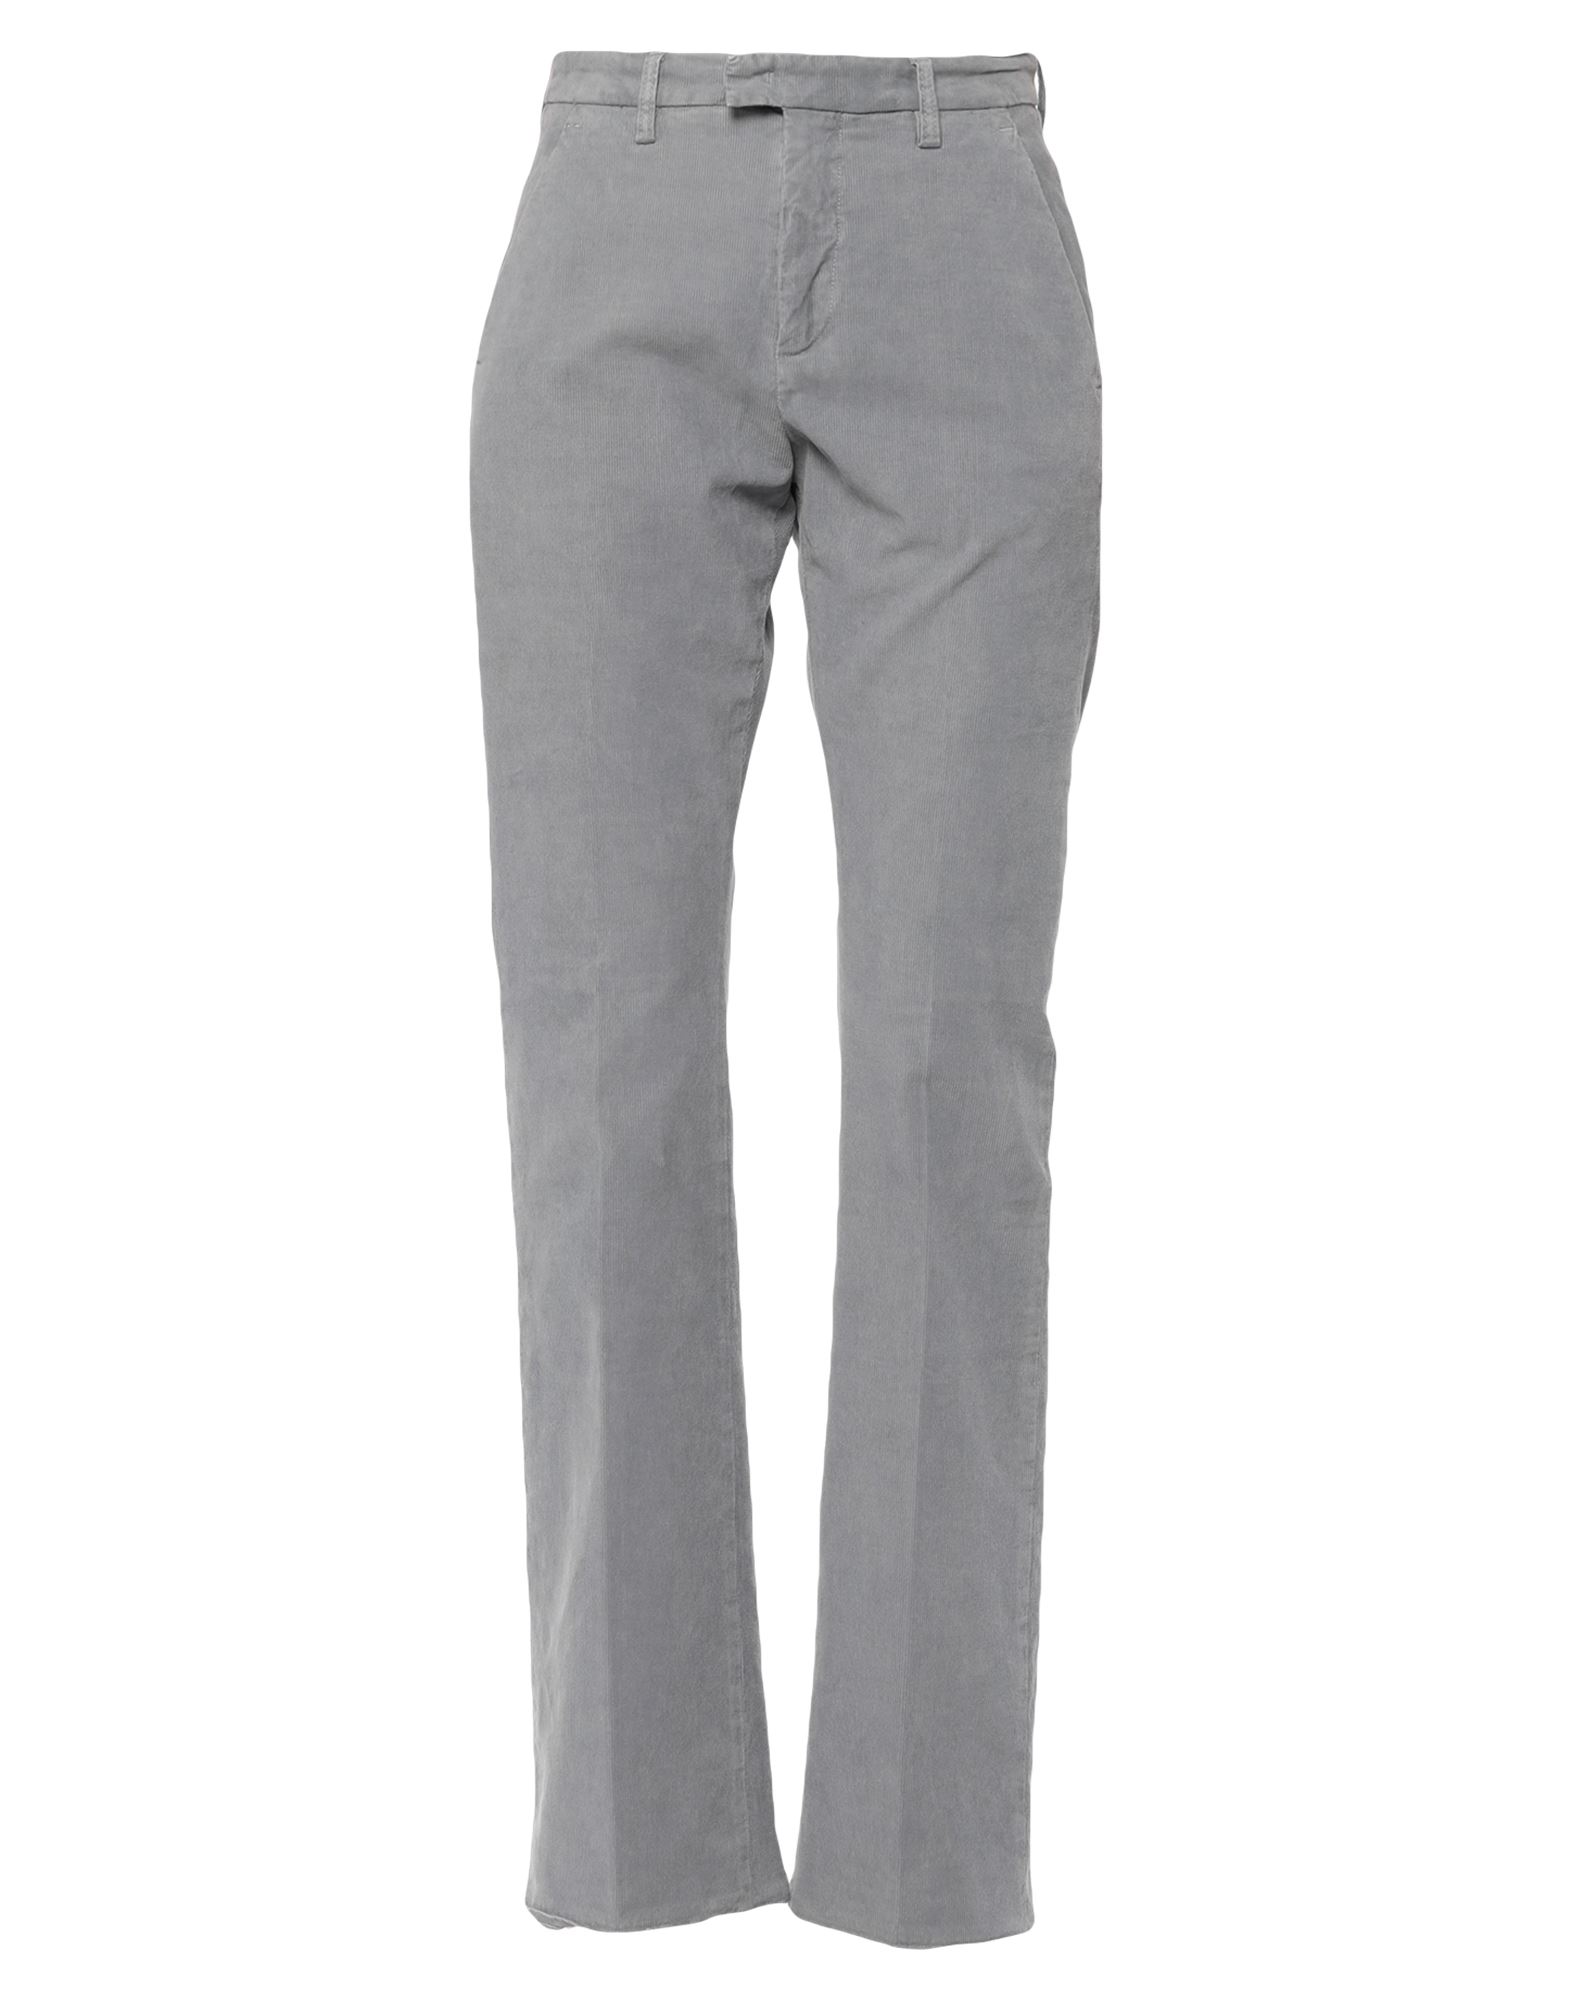 Department 5 Pants In Grey